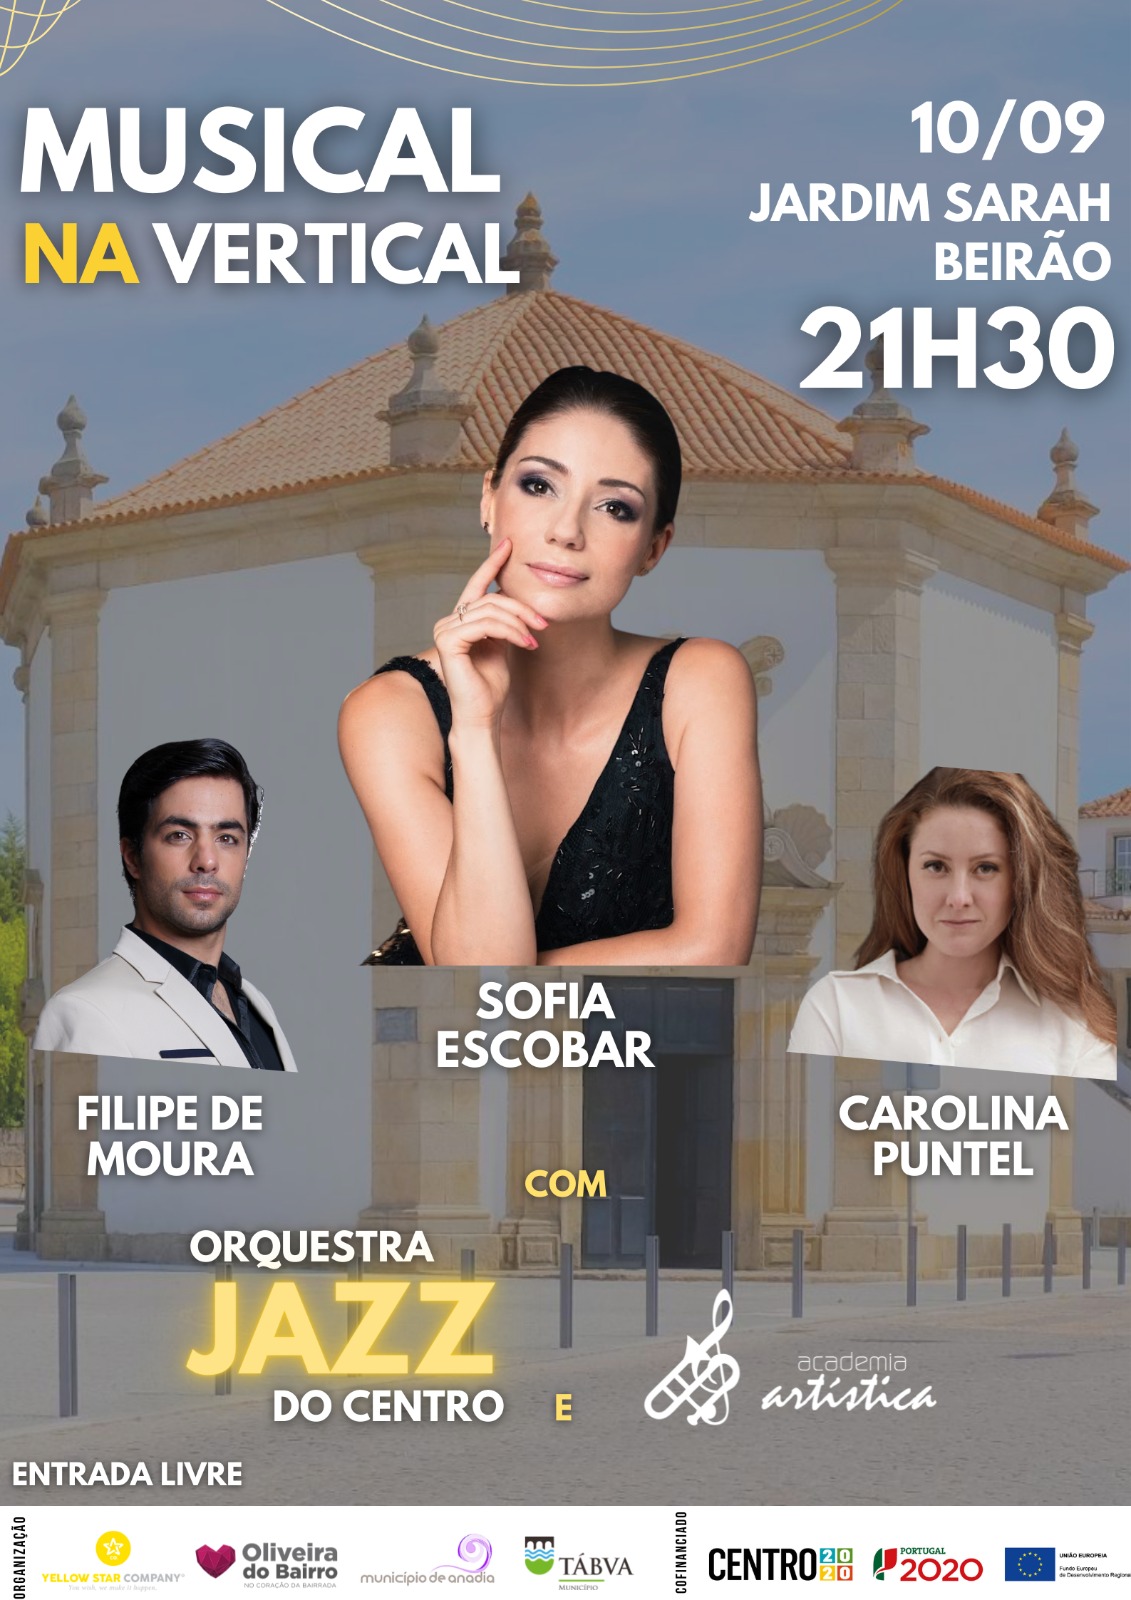 10 Setembro 2022 - Orquestra Jazz do Centro & Academia Artistica - Musical na Vertical - Com Filipe de Moura, Sofia Escobar e Carolina Puntel